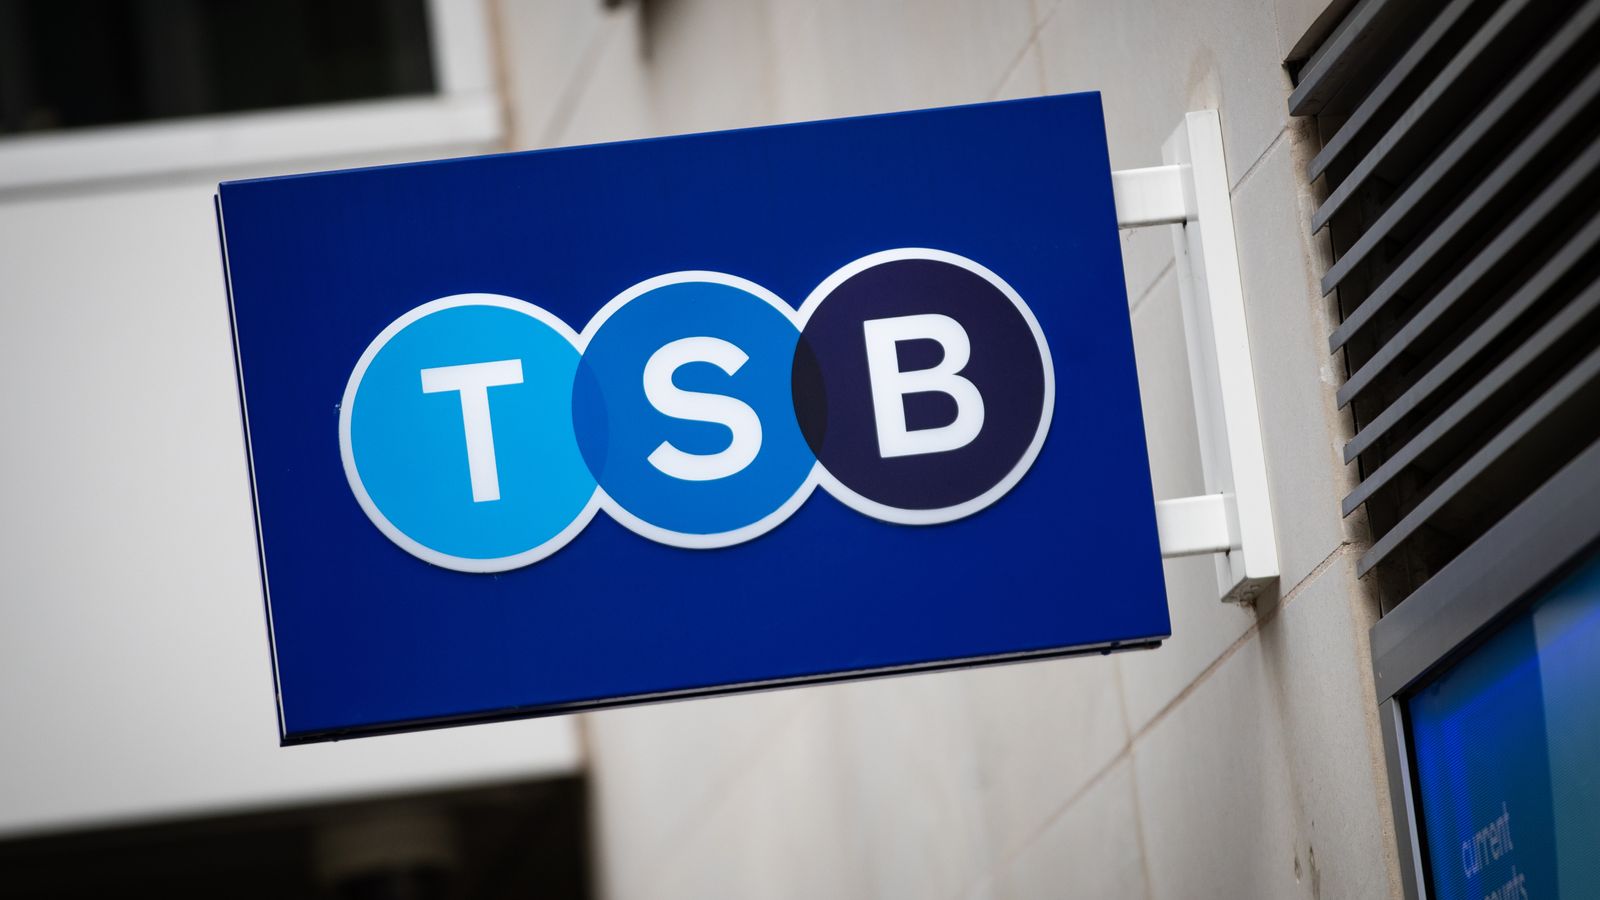 TSB schließt 36 Filialen und streicht Hunderte von Arbeitsplätzen, da die vollständige Liste der Schließungen bekannt gegeben wurde |  Wirtschaftsnachrichten